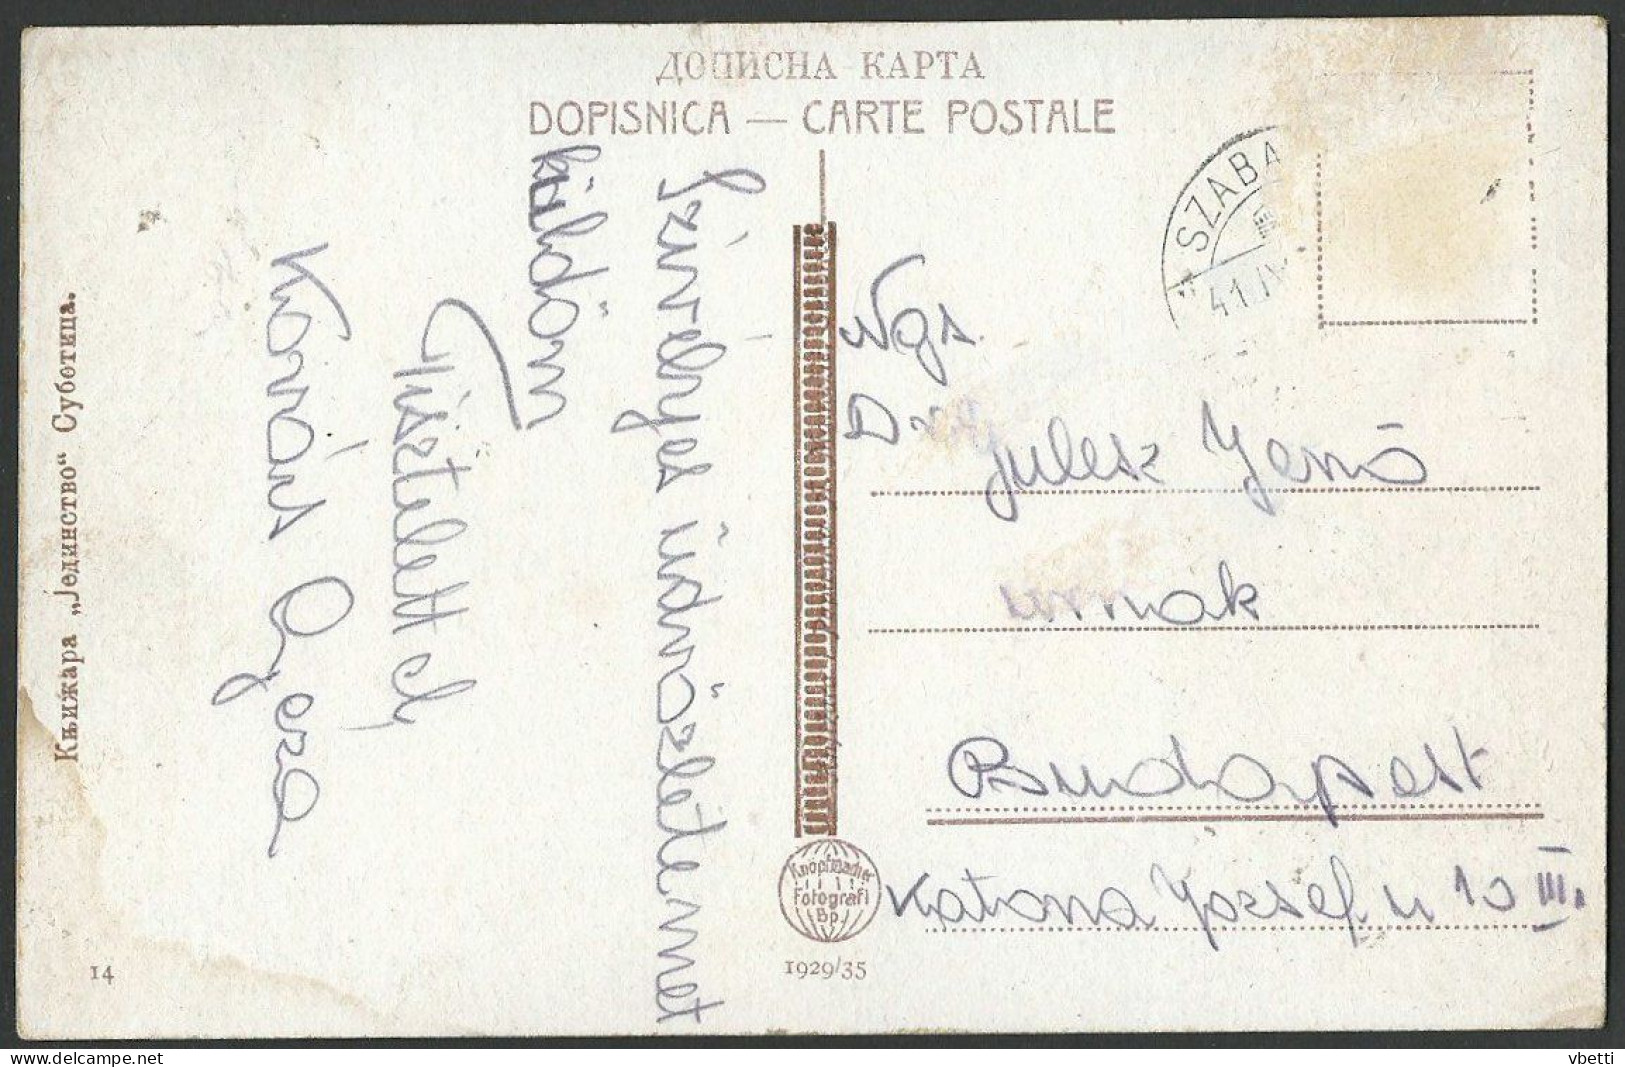 Serbia / Hungary: Subotica (Szabadka / Maria - Theresianopel), Drzavna Gimnazija   1941 - Serbie